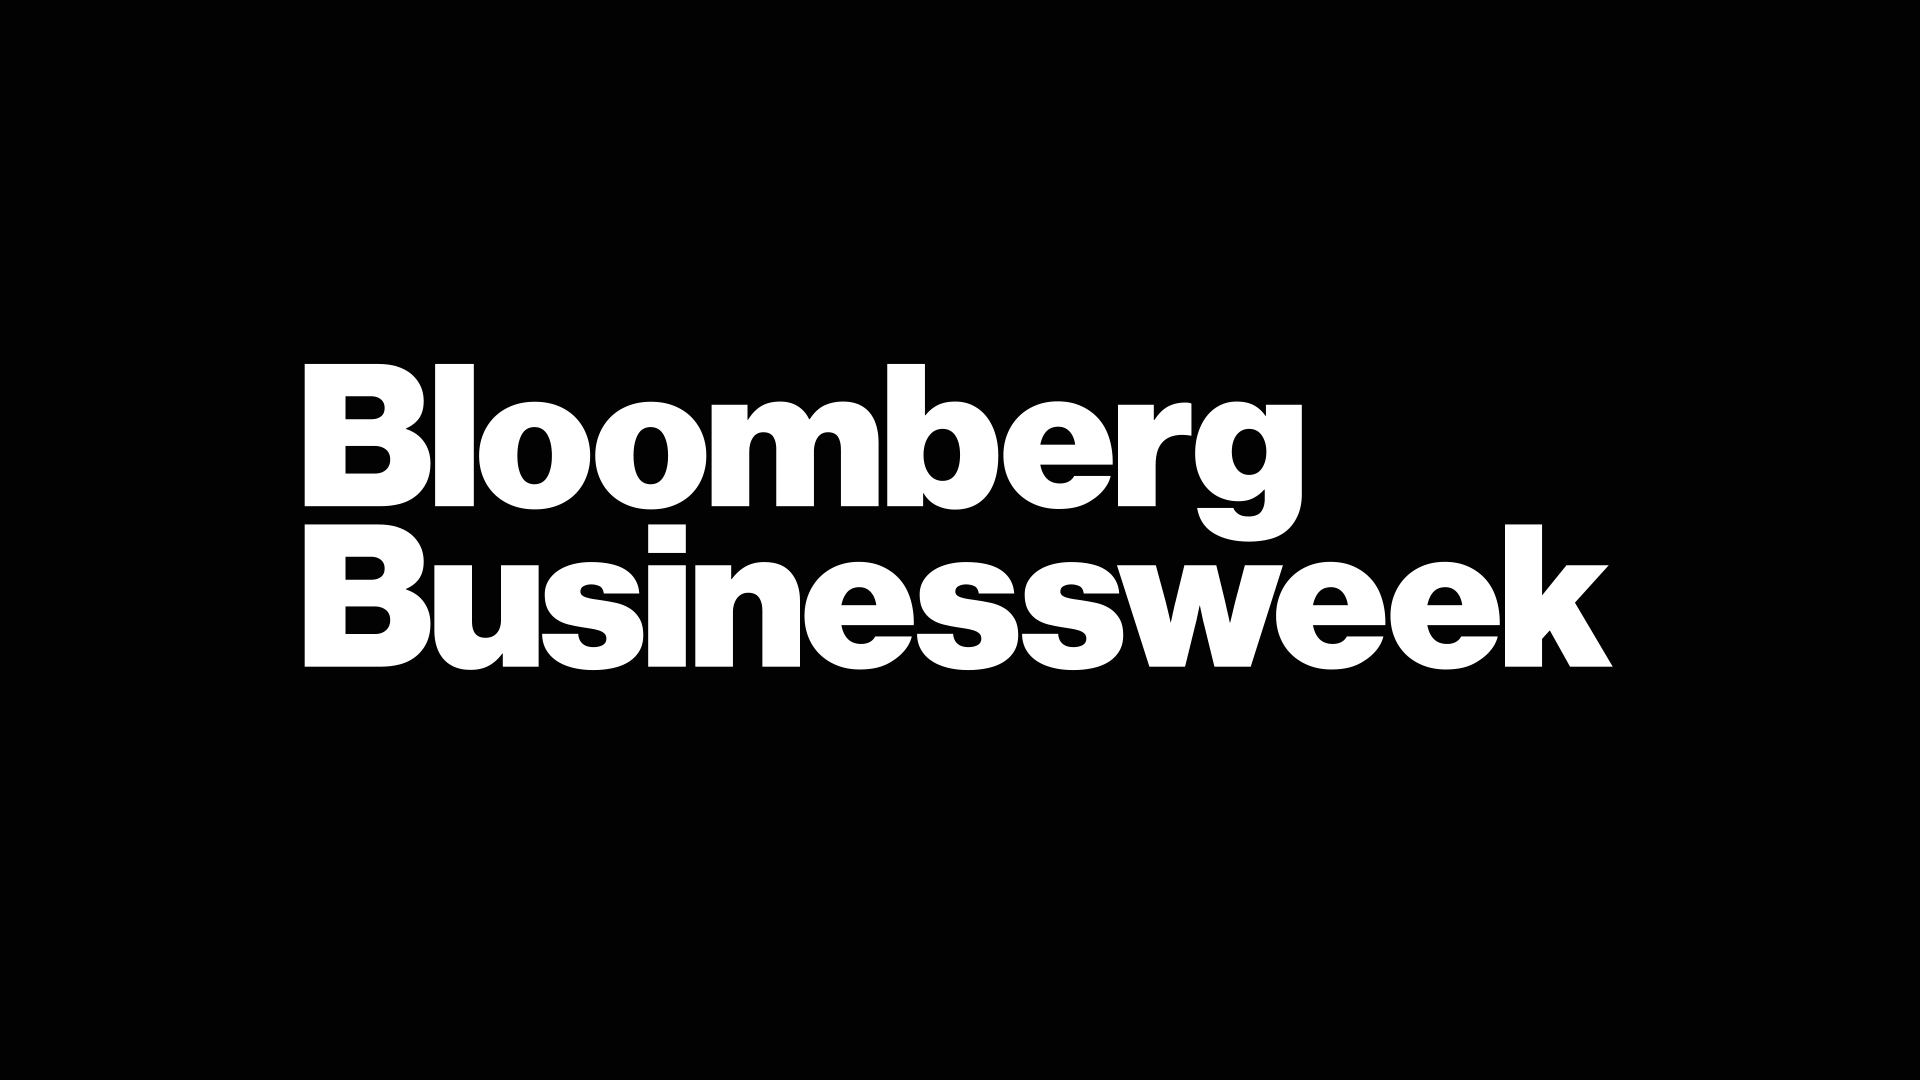 Bloomberg Businessweek Newsletter Cover Image